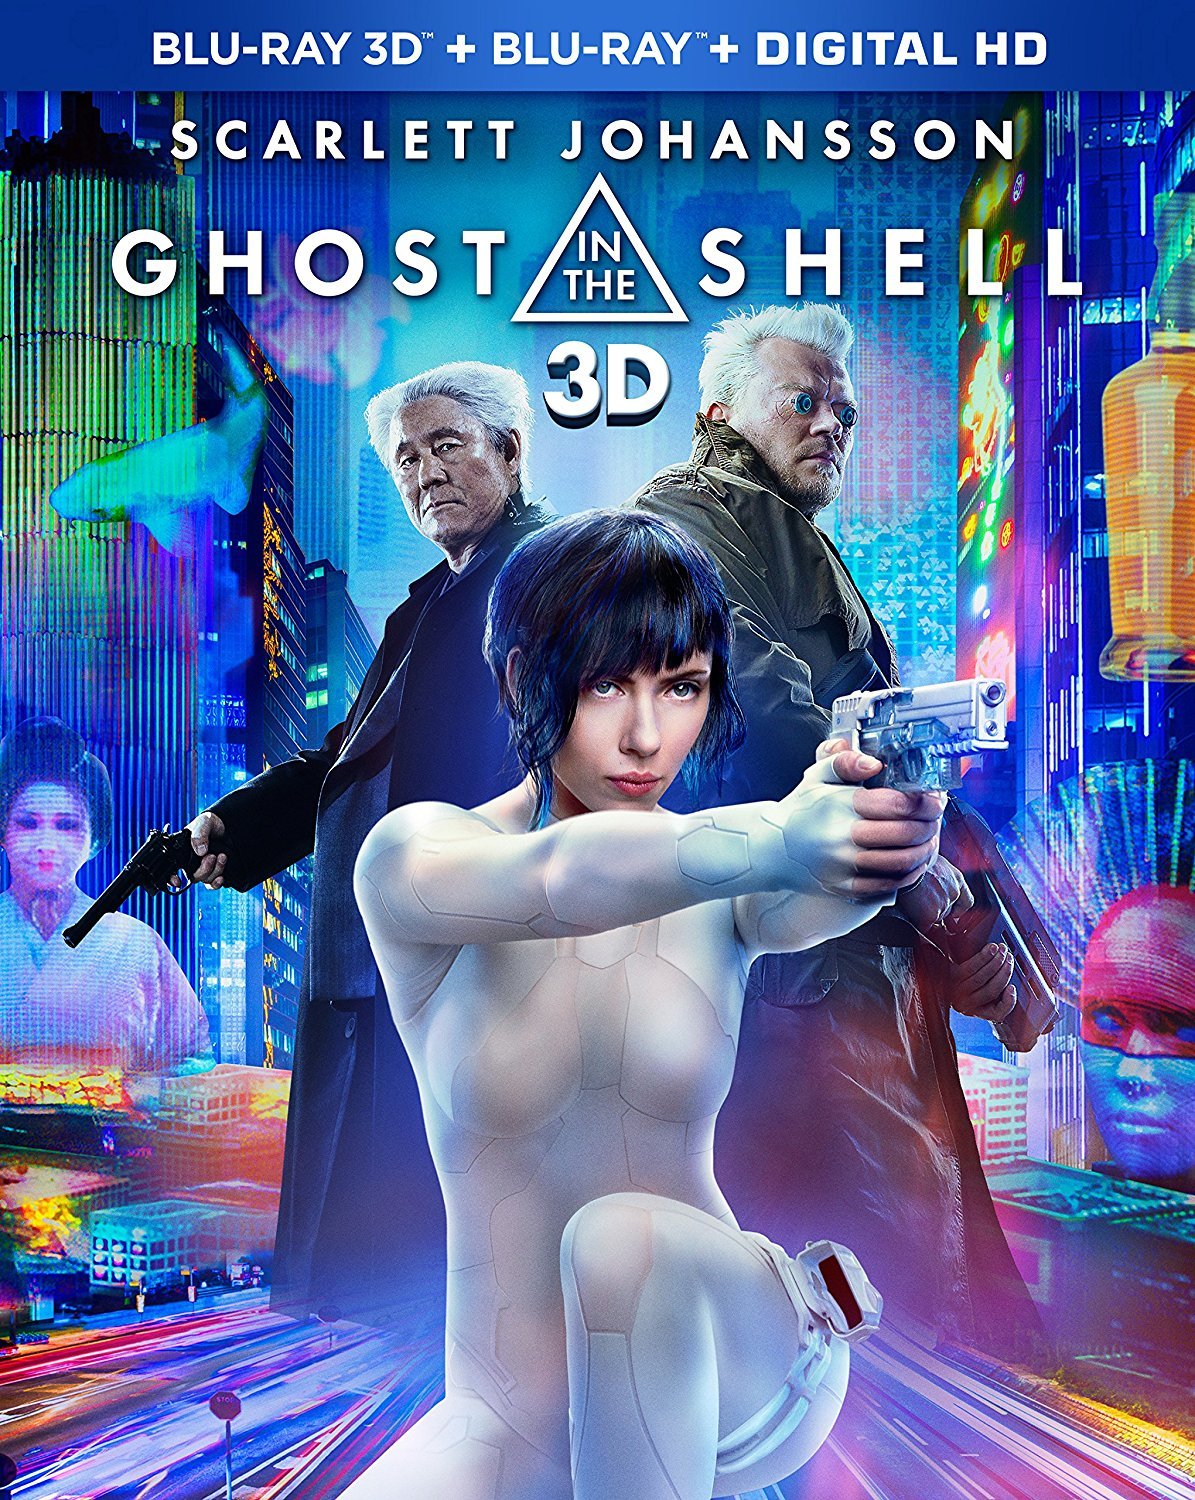 攻壳机动队/攻壳机动队真人版【3D原盘简繁中字 DIY正版国语5.1 简繁/双语特效字幕】 Ghost in the Shell 2017 1080p 3D Blu-ray AVC TrueHD 7.1 Atmos-Thor@HDSky    [41.20 GB]-1.jpg